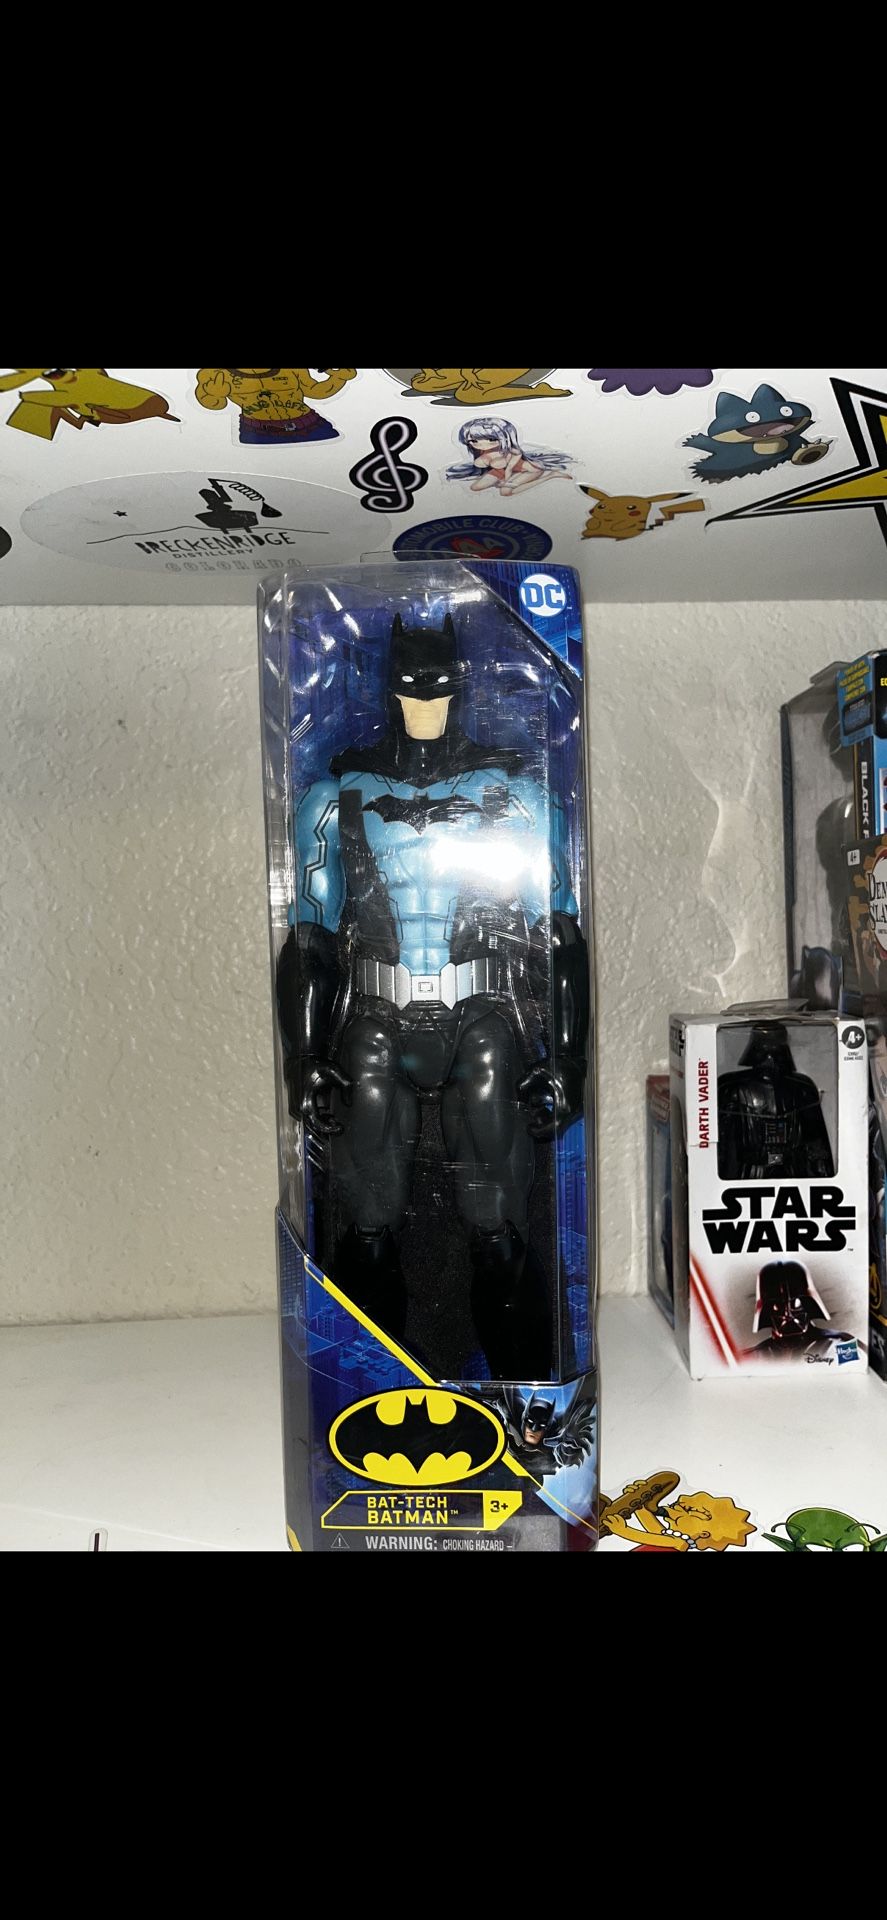 Bat-Tech Batman Action Figure 